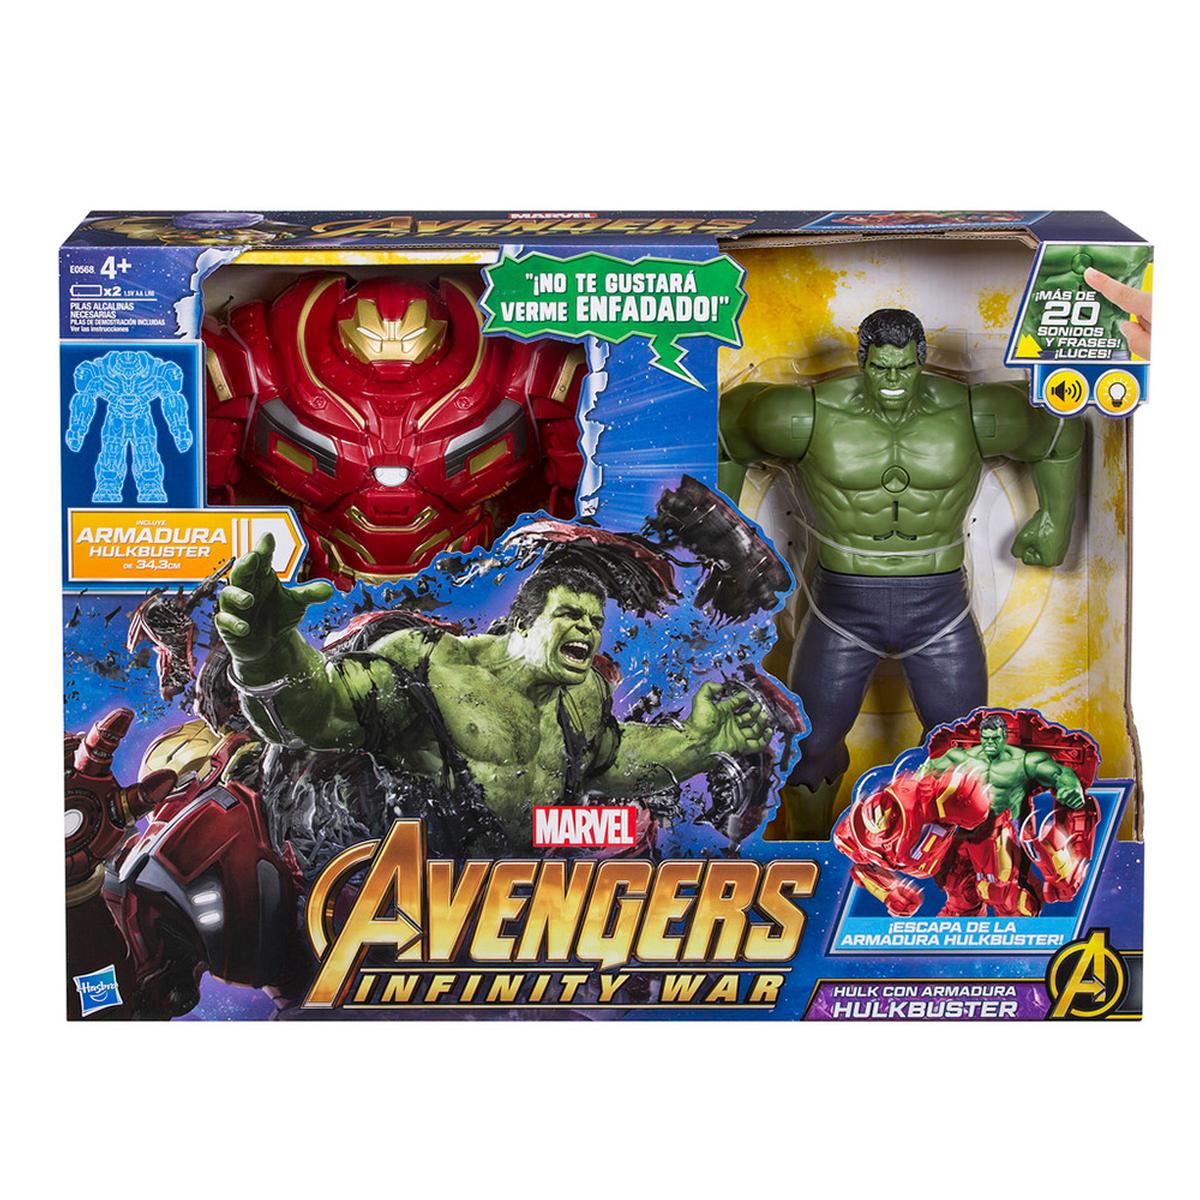 Los Vengadores - Hulk con Armadura Hulkbuster | Marvel | Toys"R"Us España